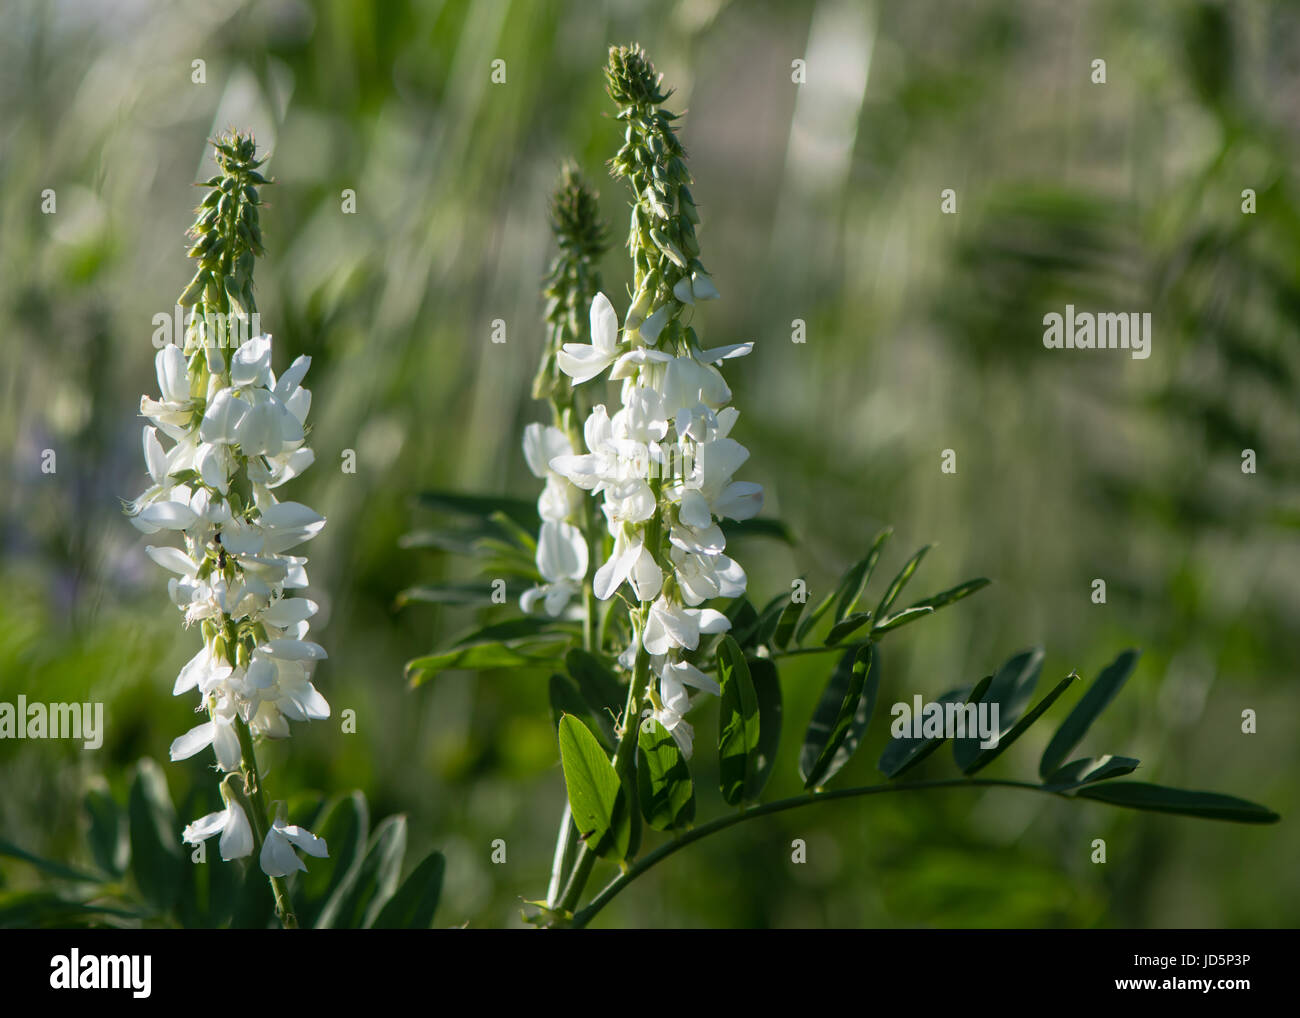 Caprino rue (Galega officinalis) piante in fiore. Fiori bianchi su impianto nella famiglia di pisello (Fabaceae) crescente sul parco NEL REGNO UNITO Foto Stock